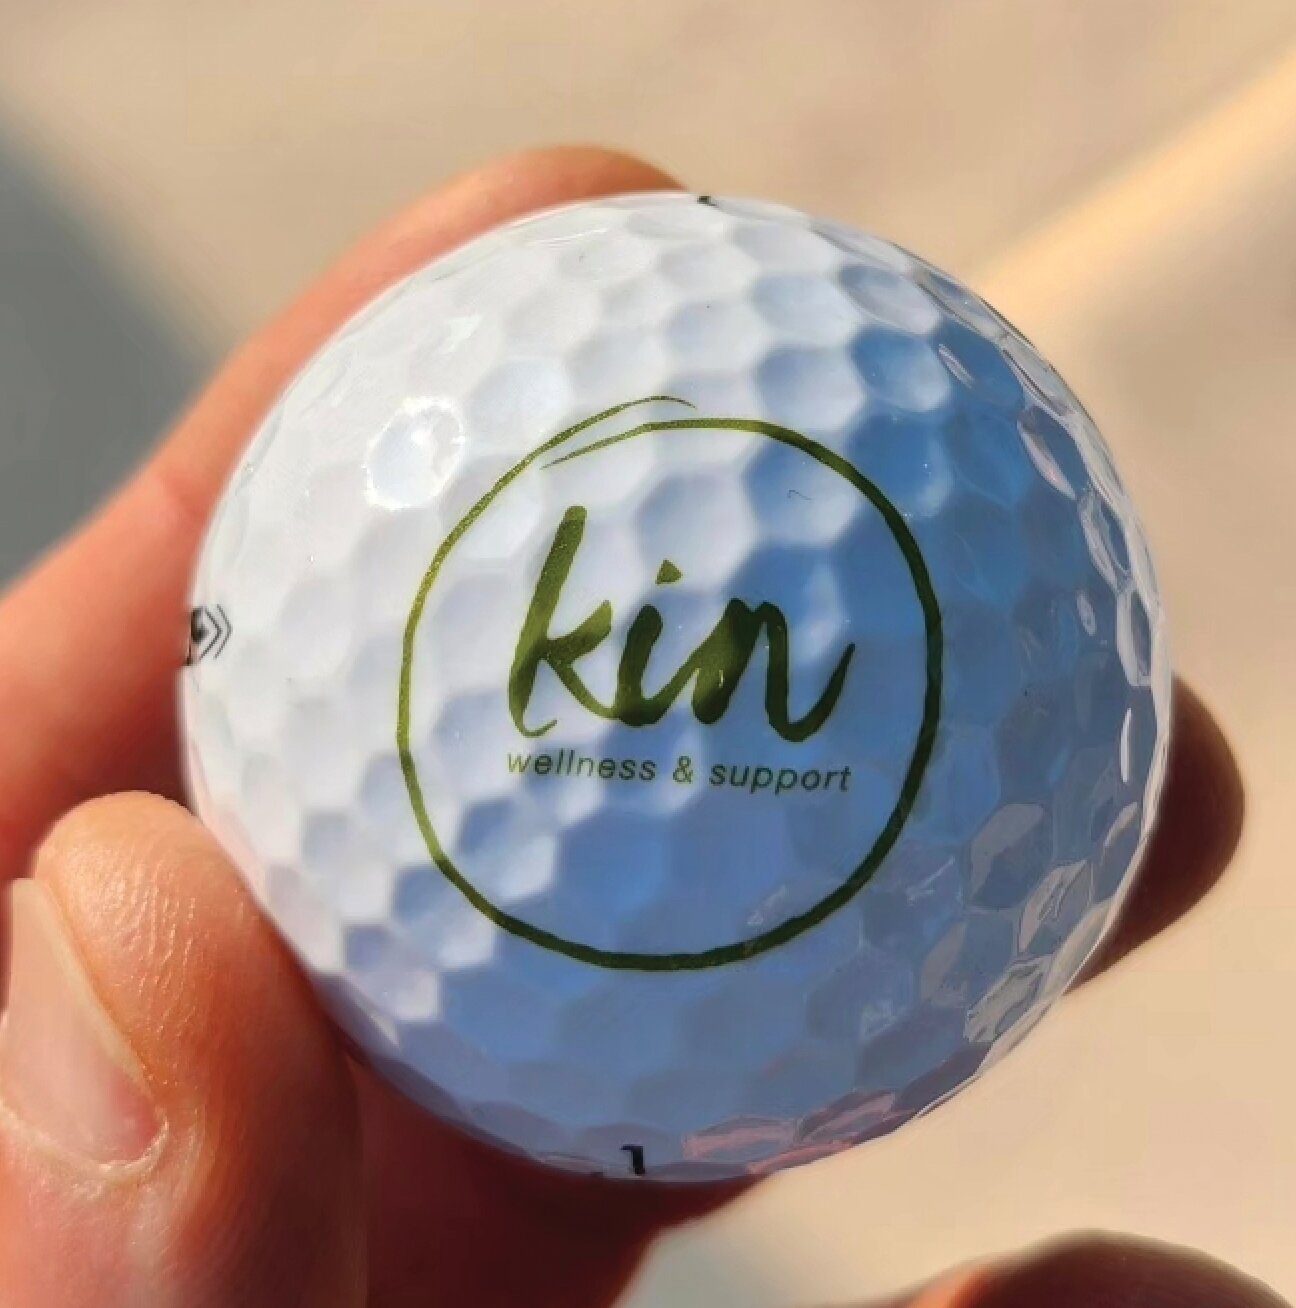 A Kin golf ball.